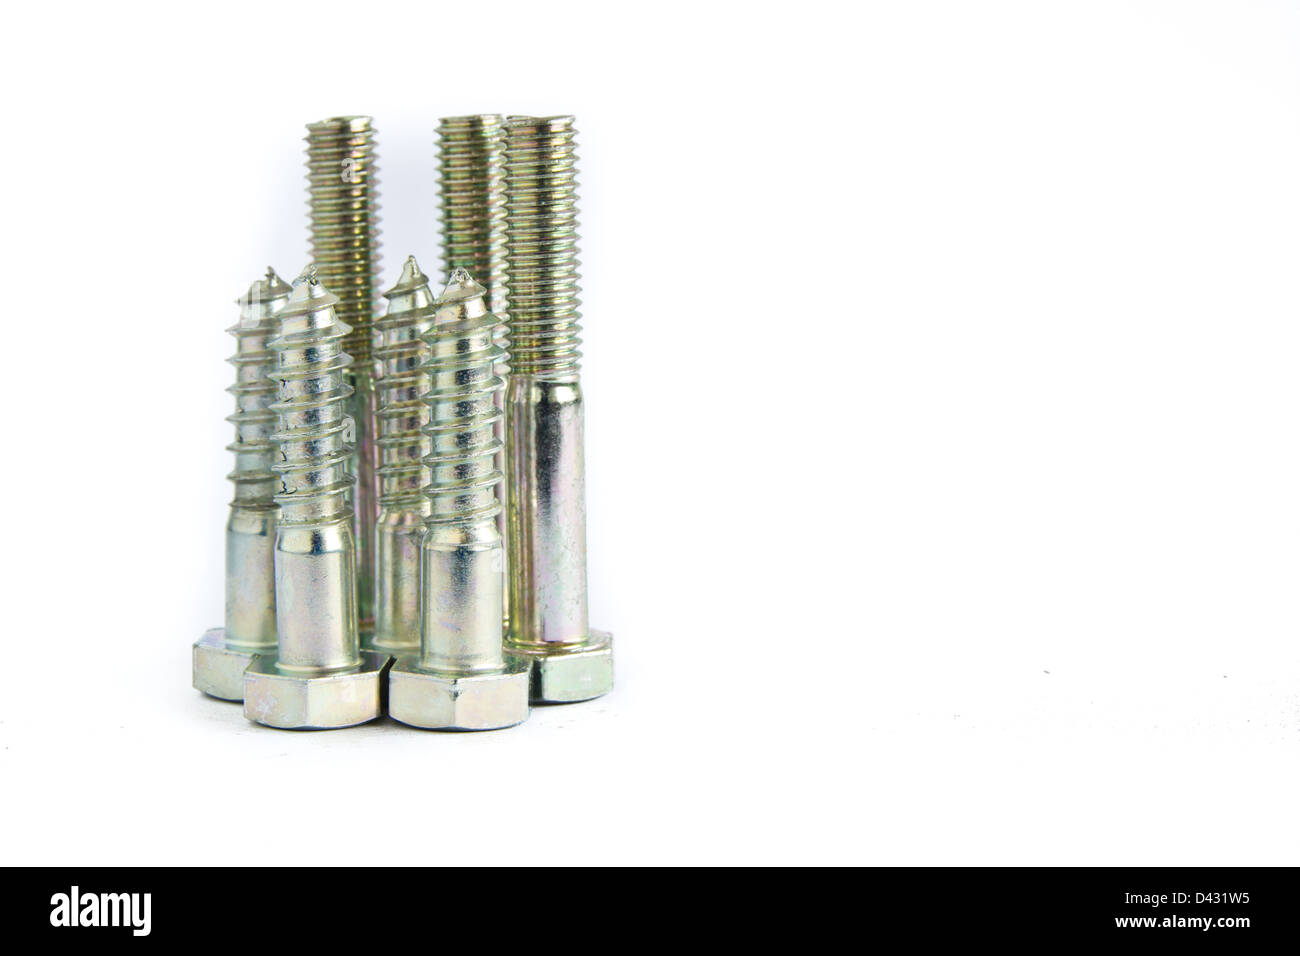 random pile of hexagonal threaded steel bolts or screws on white Stock Photo